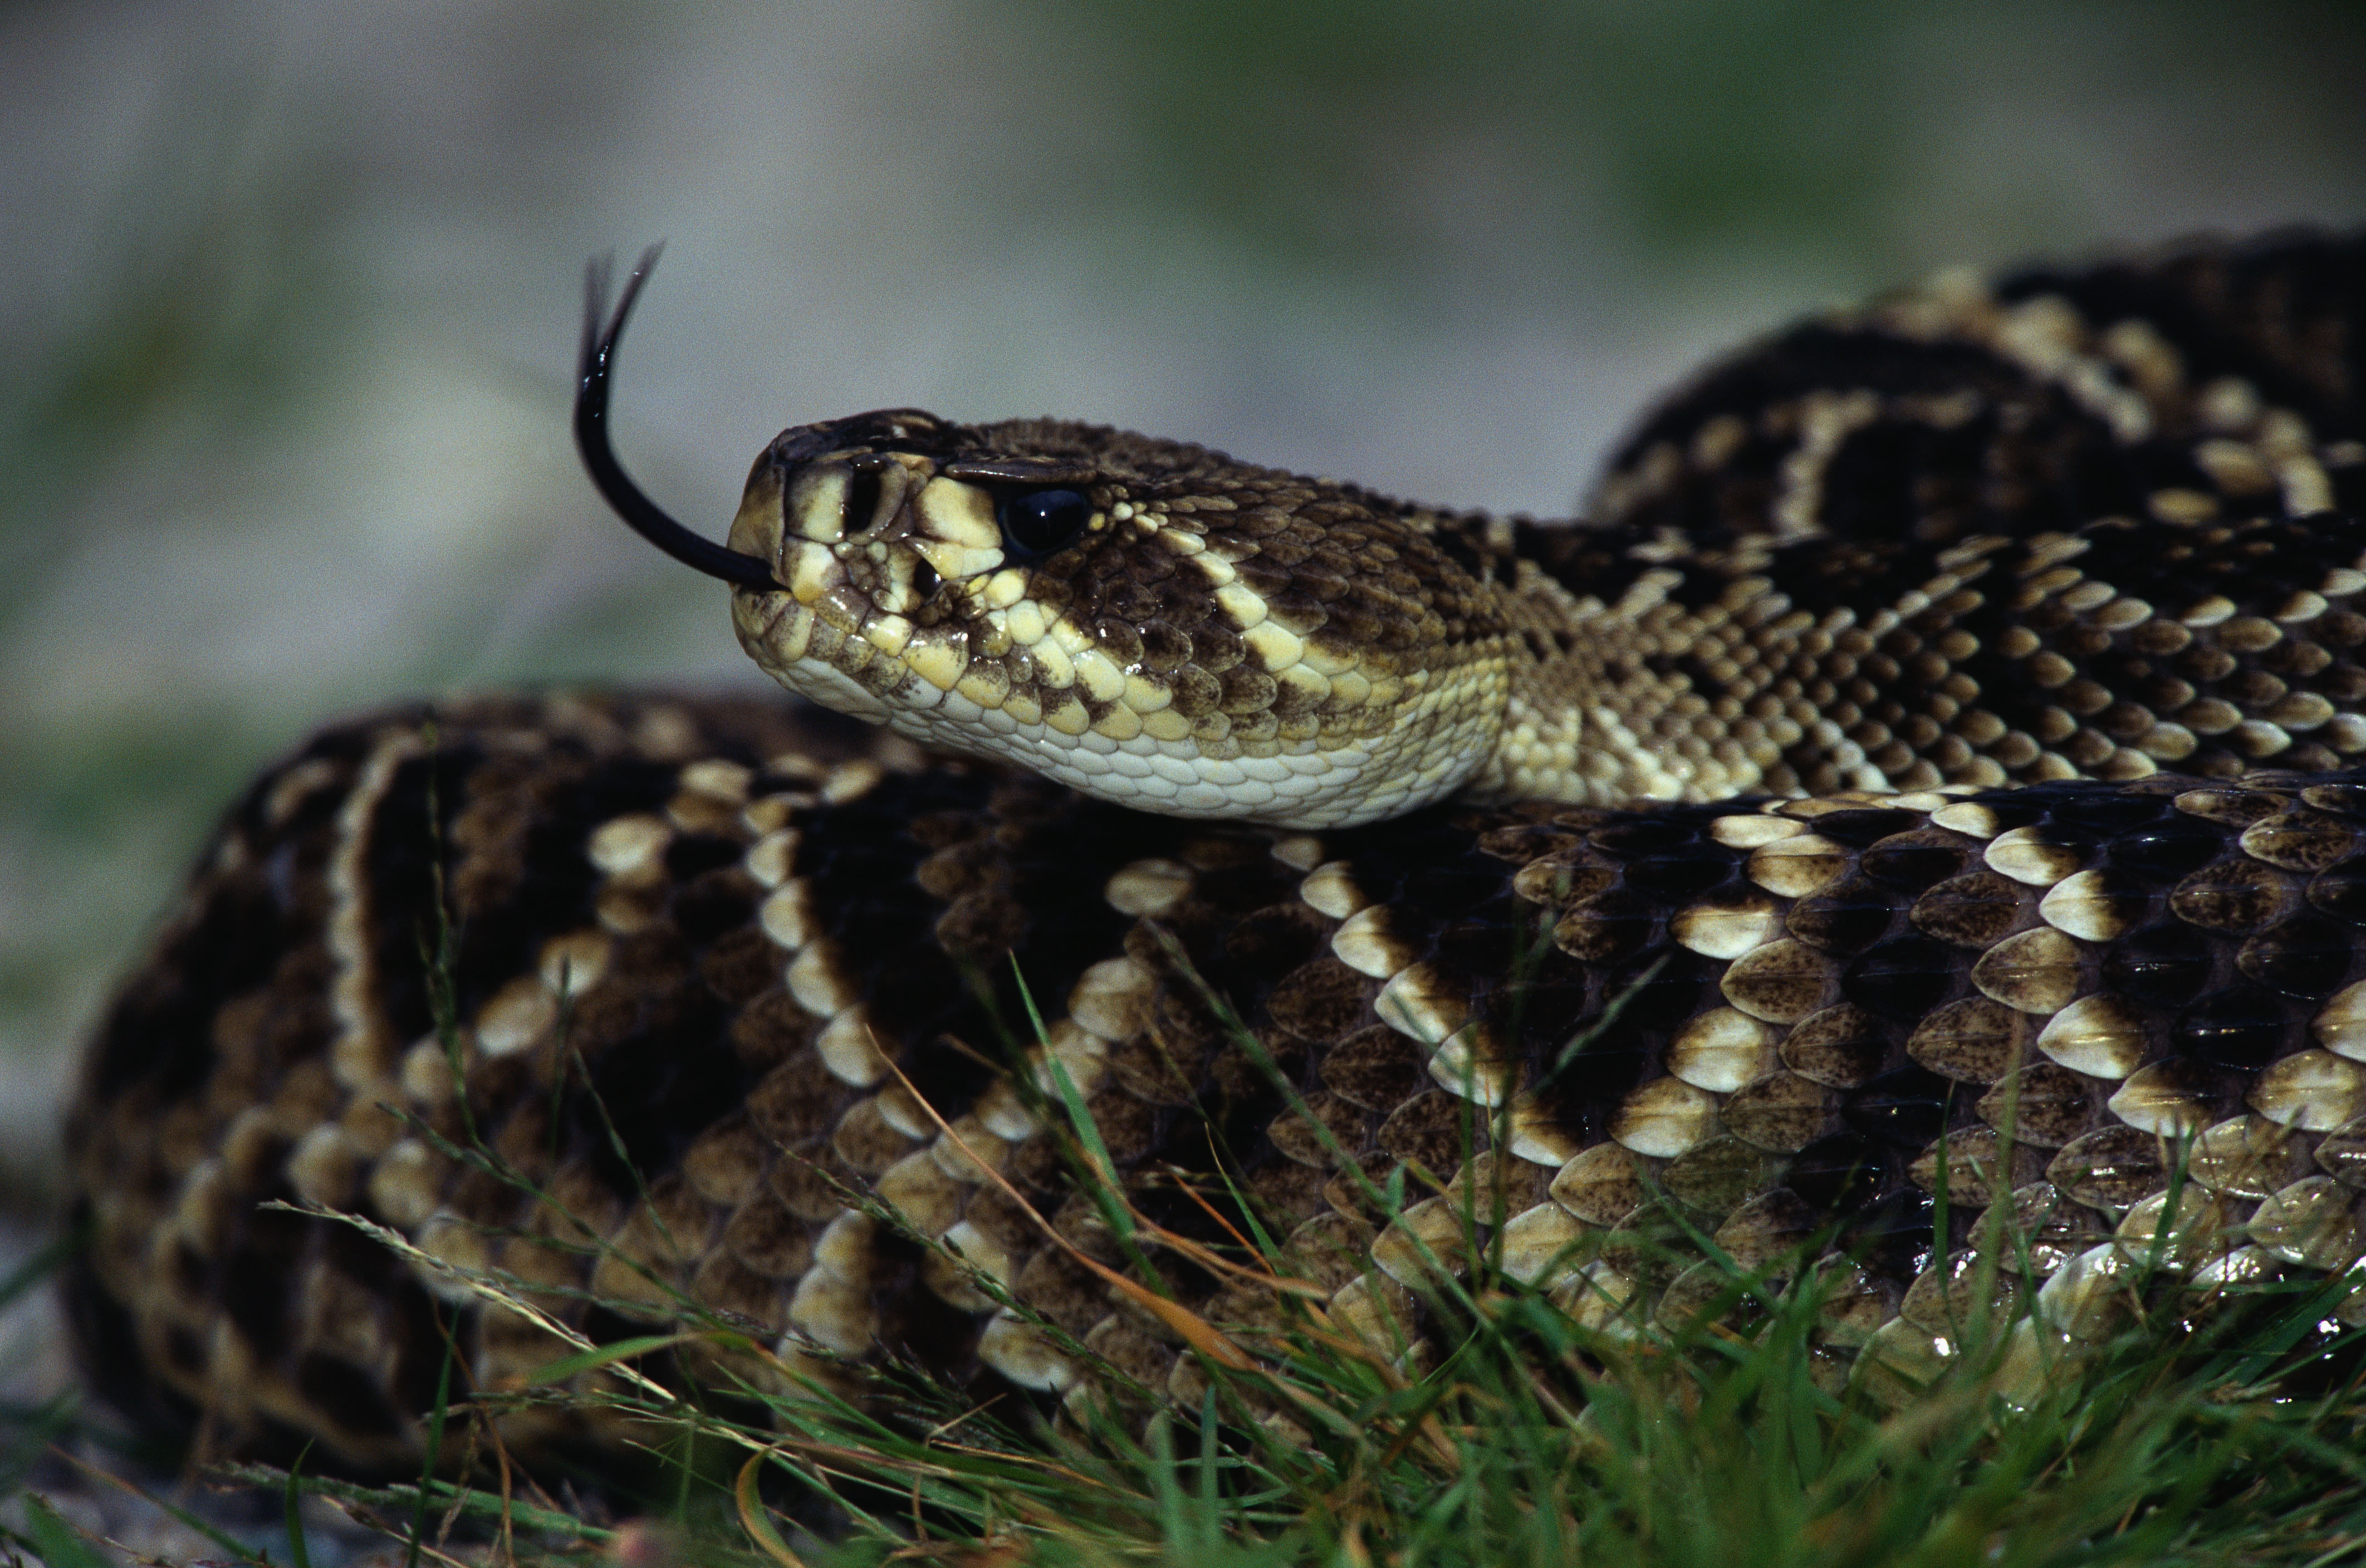 Image: Rattlesnake, Viper, tongue, hiss, scales